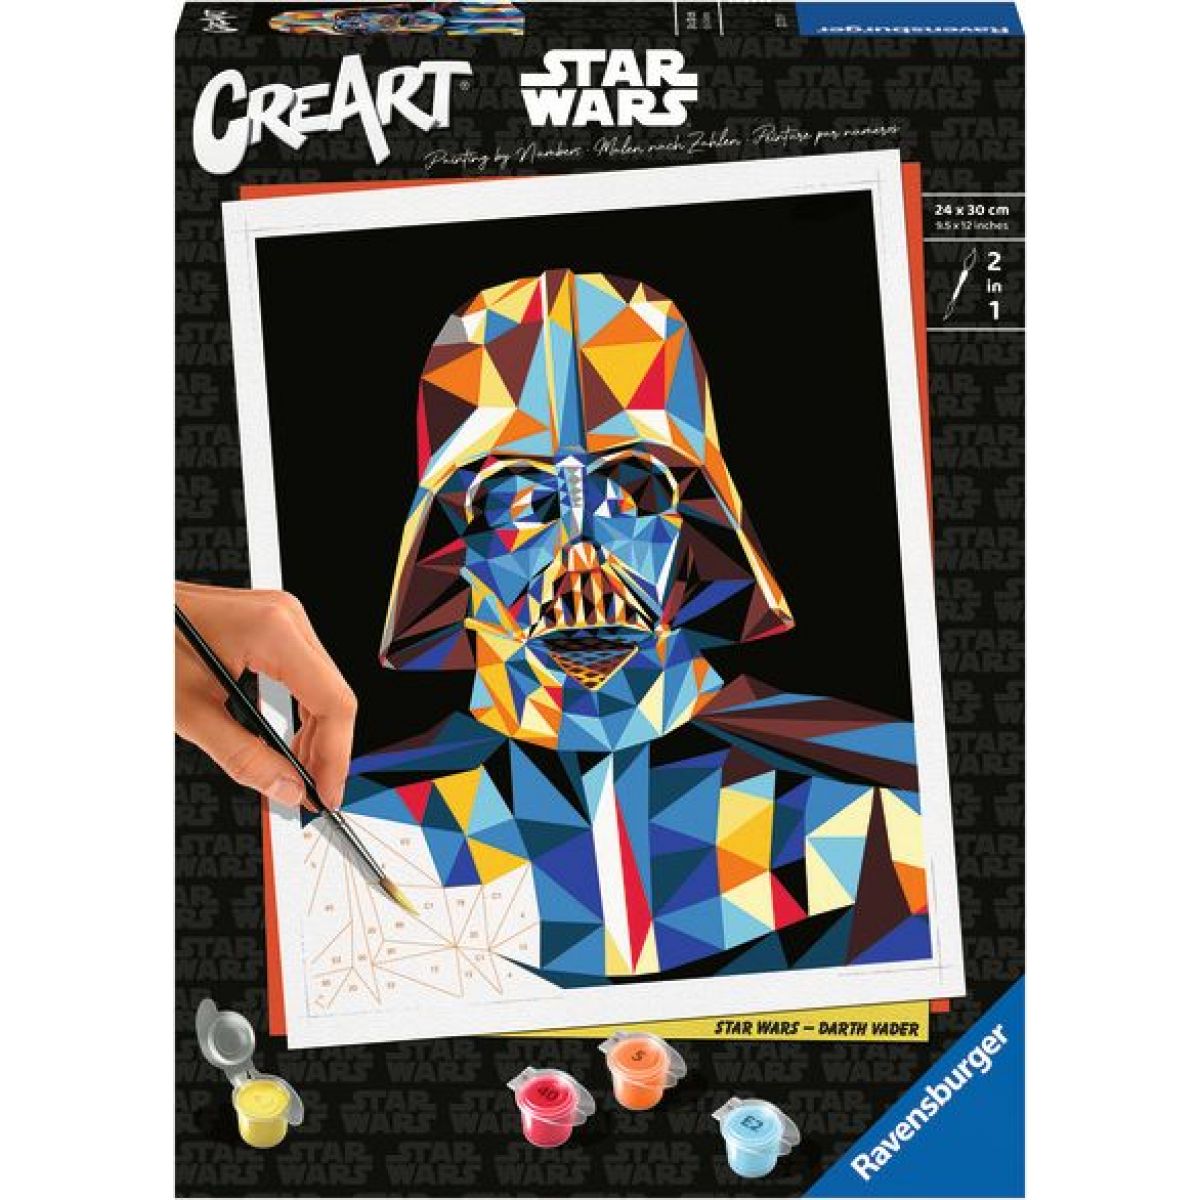 CreArt 237319 Star Wars: Darth Vader.

Po vybarvení a zaschnutí barev mohou děti zarámovat obraz do přichystaného rámečku.

Přednosti:


	rozvíjí představivost
	procvičuje zručnost, zlepšuje koncentraci


Obsah balení:


	vysoce kvalitní pevné plátno s obrazovou předlohou
	na plátně očíslované jednotlivé plochy
	kartonový stojánek pro kelímky s barvami
	sada akrylových barev, štětec, rámeček


Kupte dětem kreativní set s malováním!

Vhodné pro děti od 12 let
Baleno: v papírové krabici